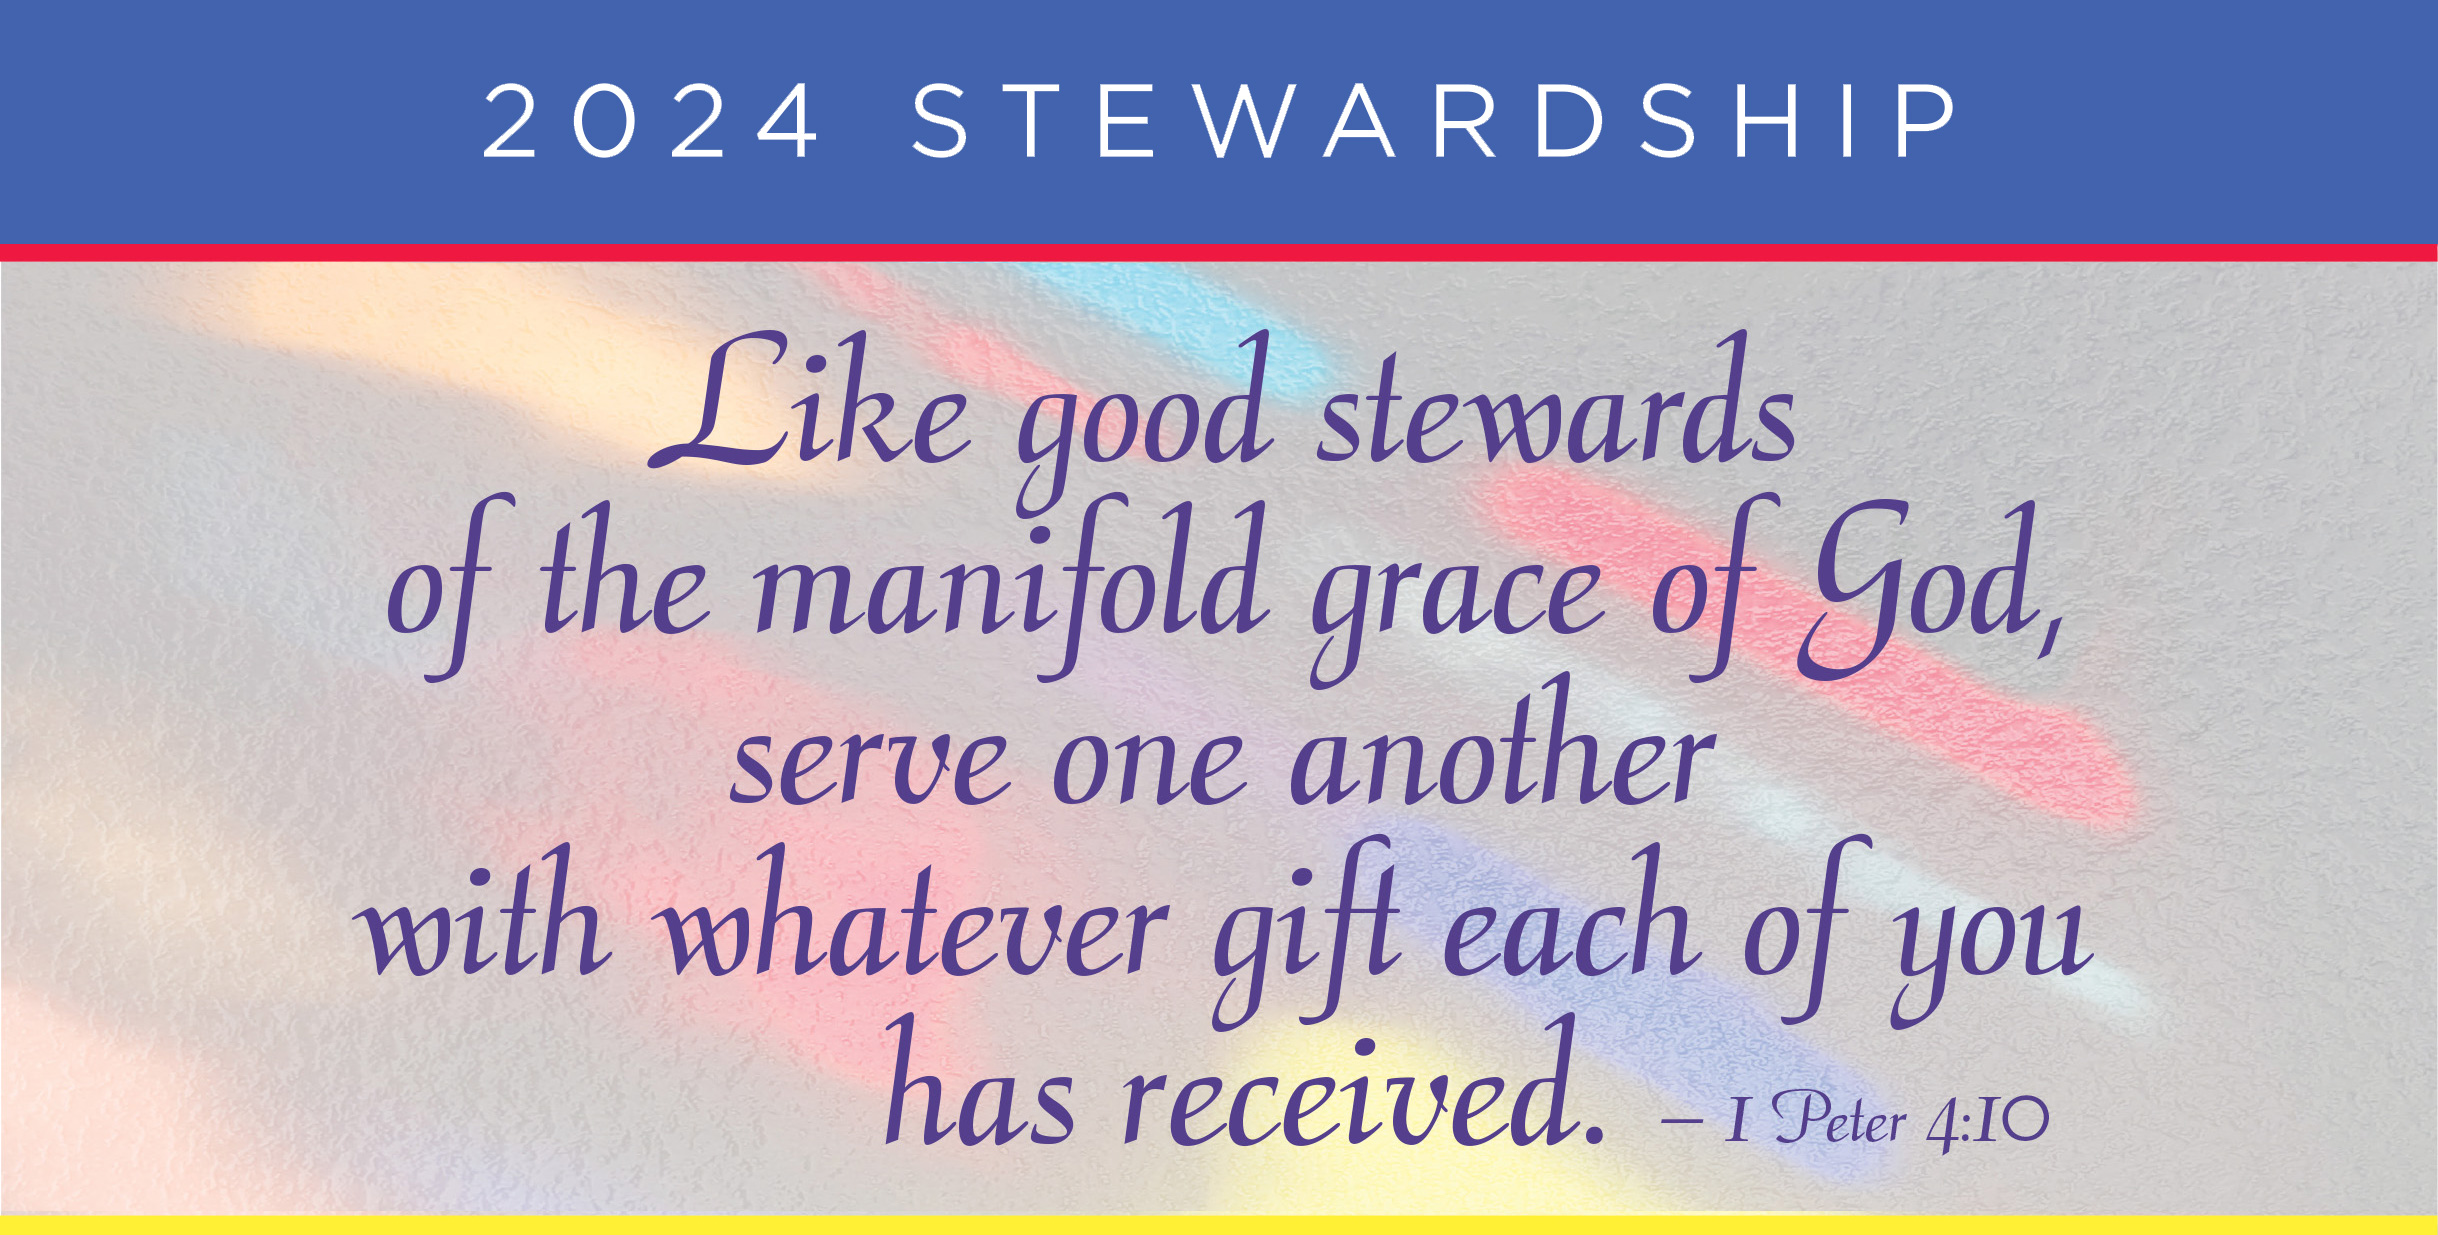 2024 Stewardship